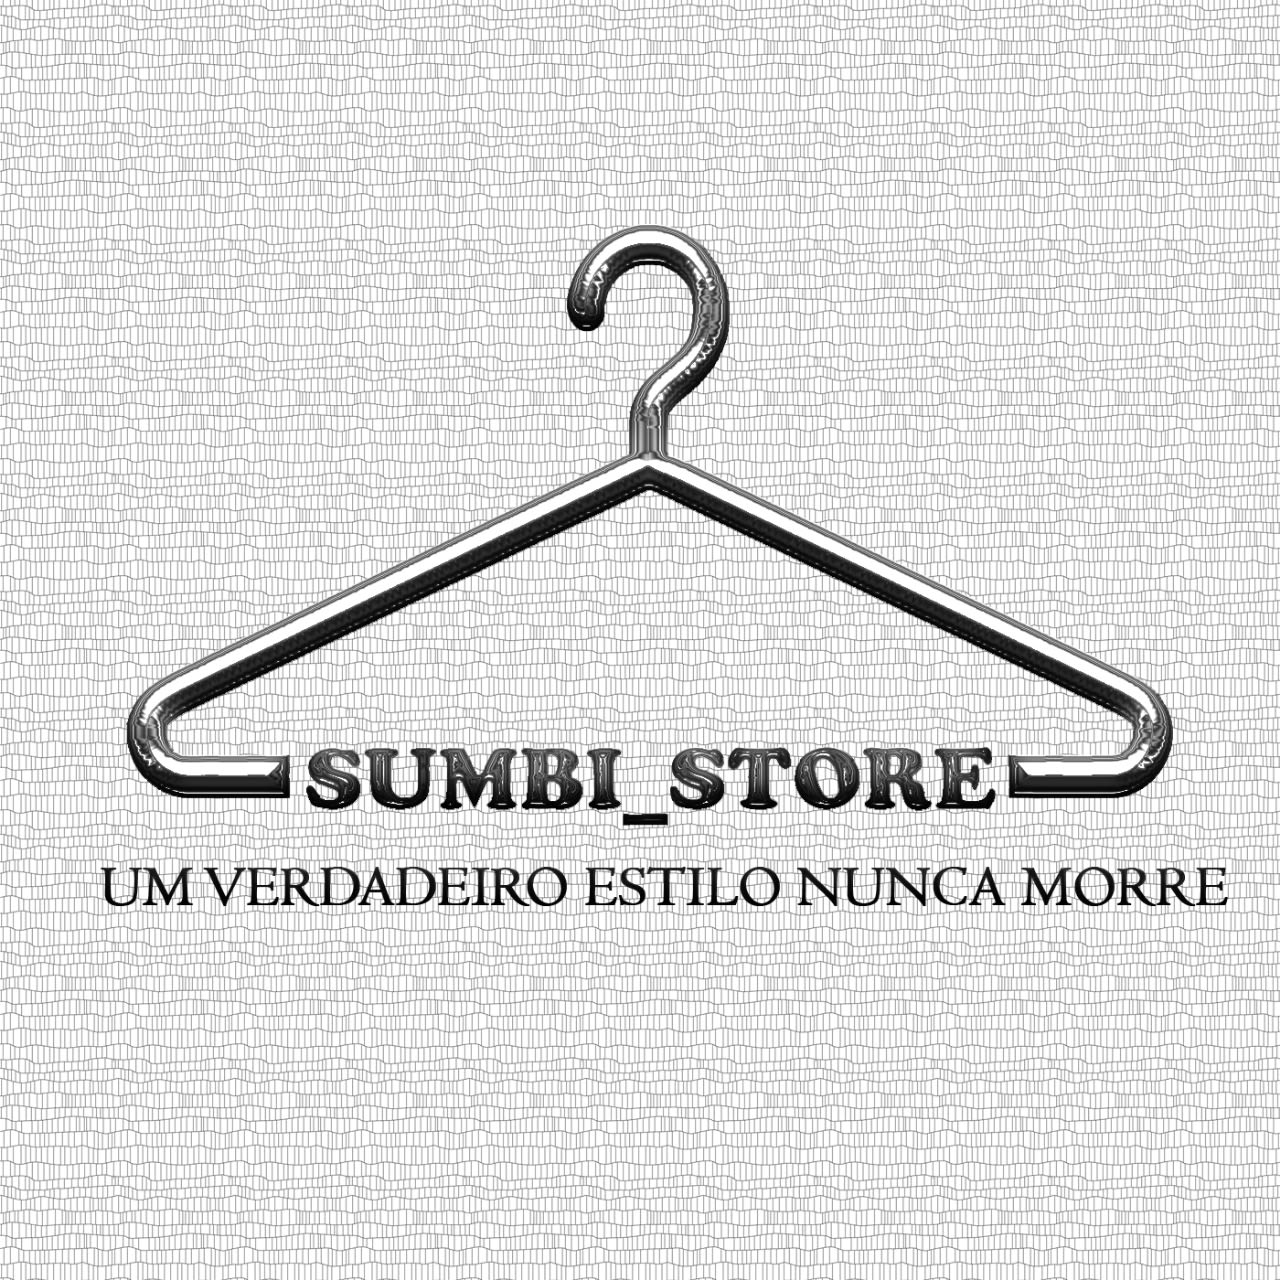 Sumbi Store